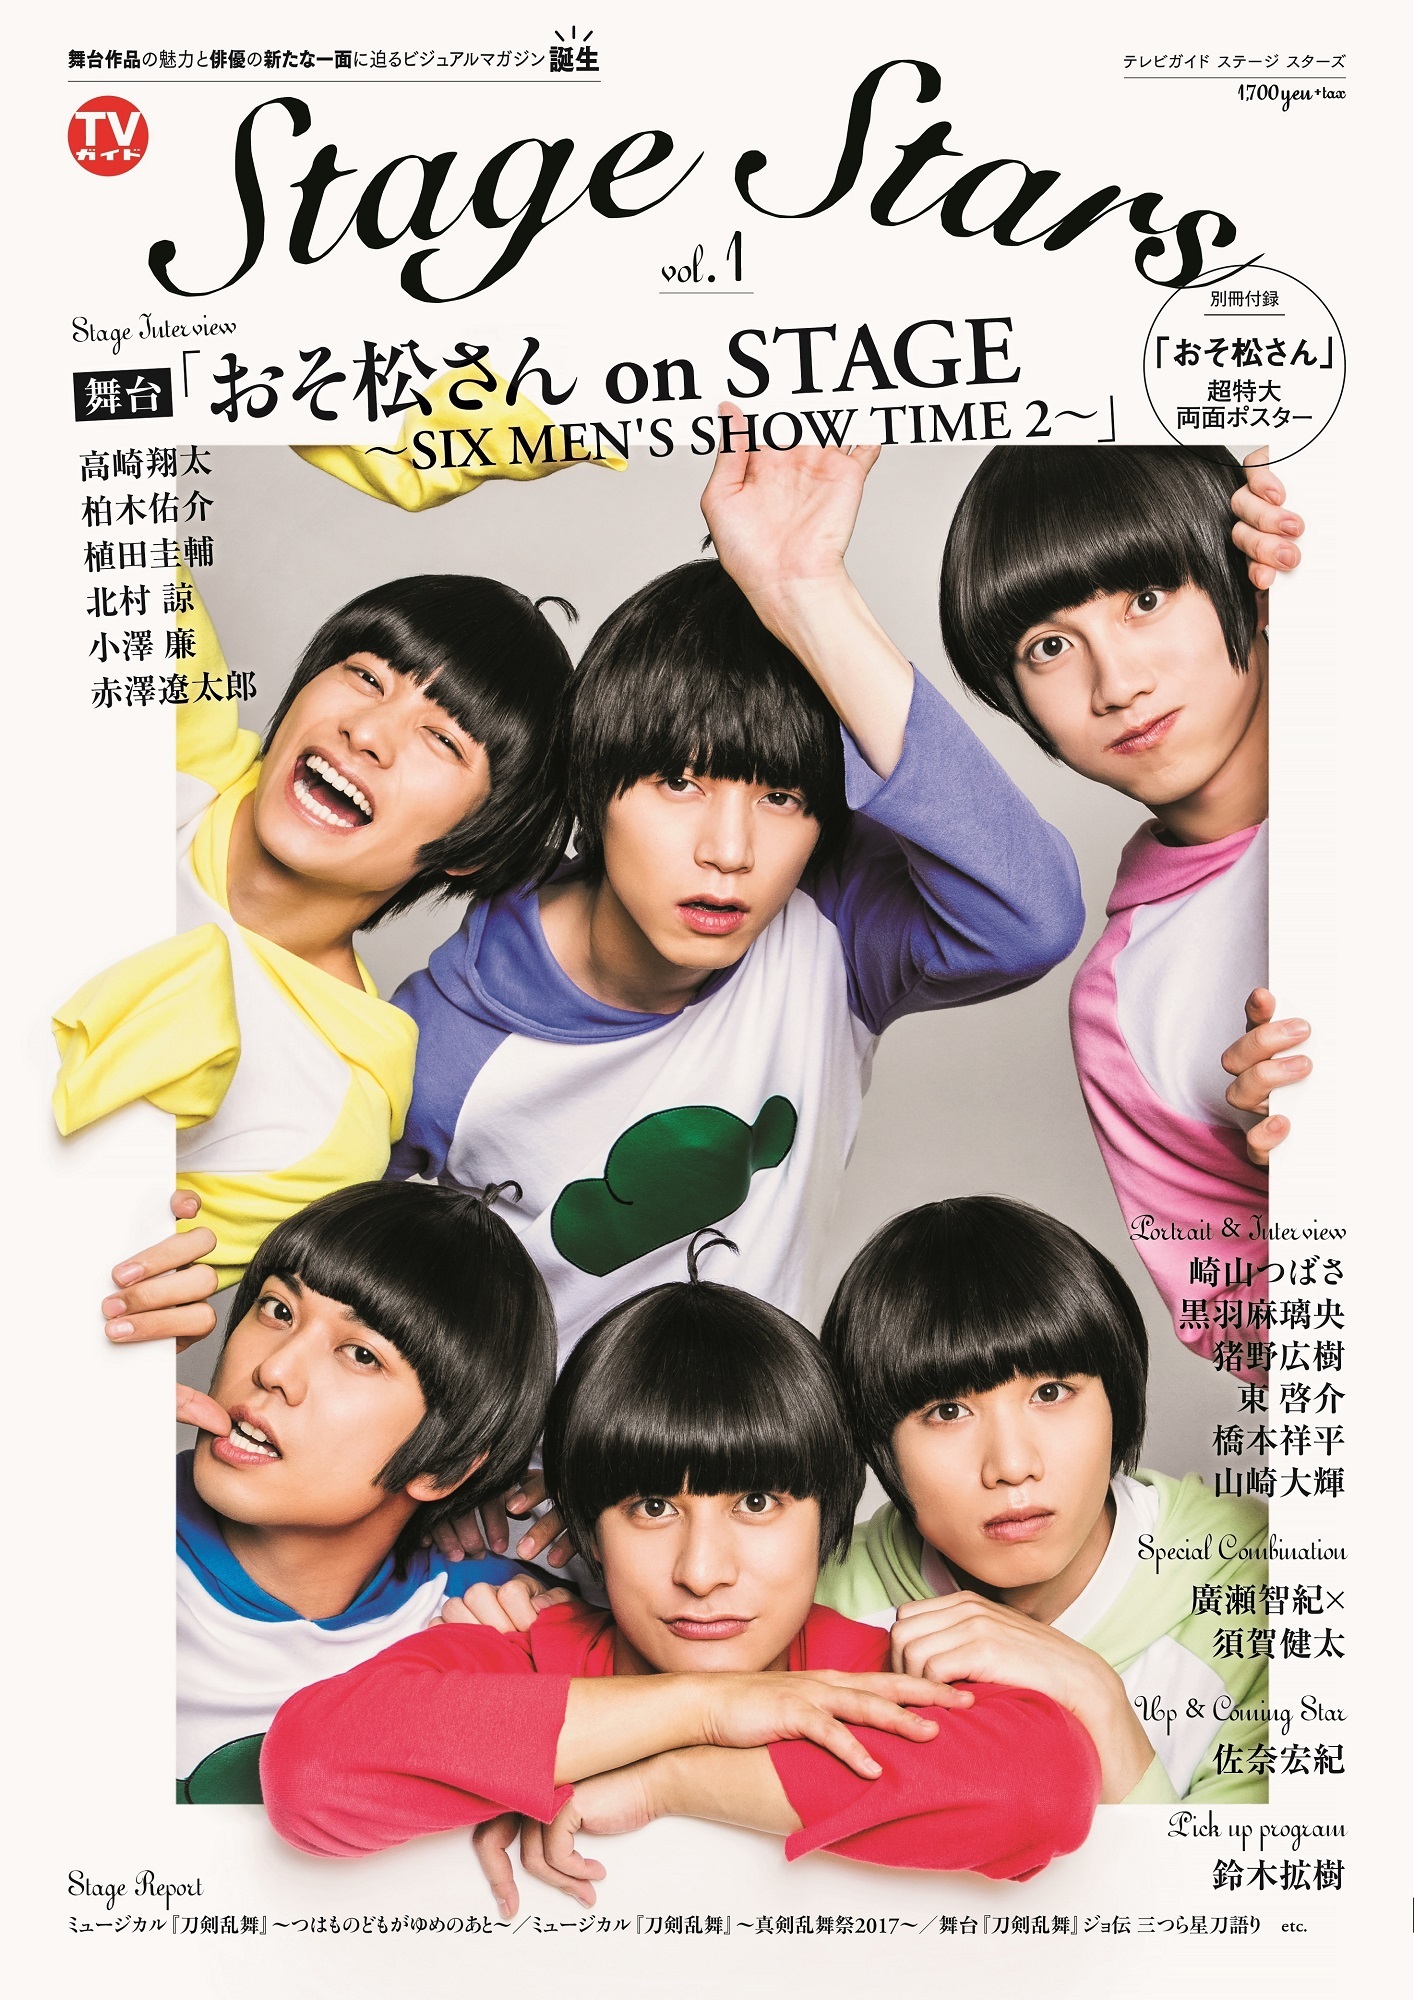 「TVガイド Stage Stars vol.1」